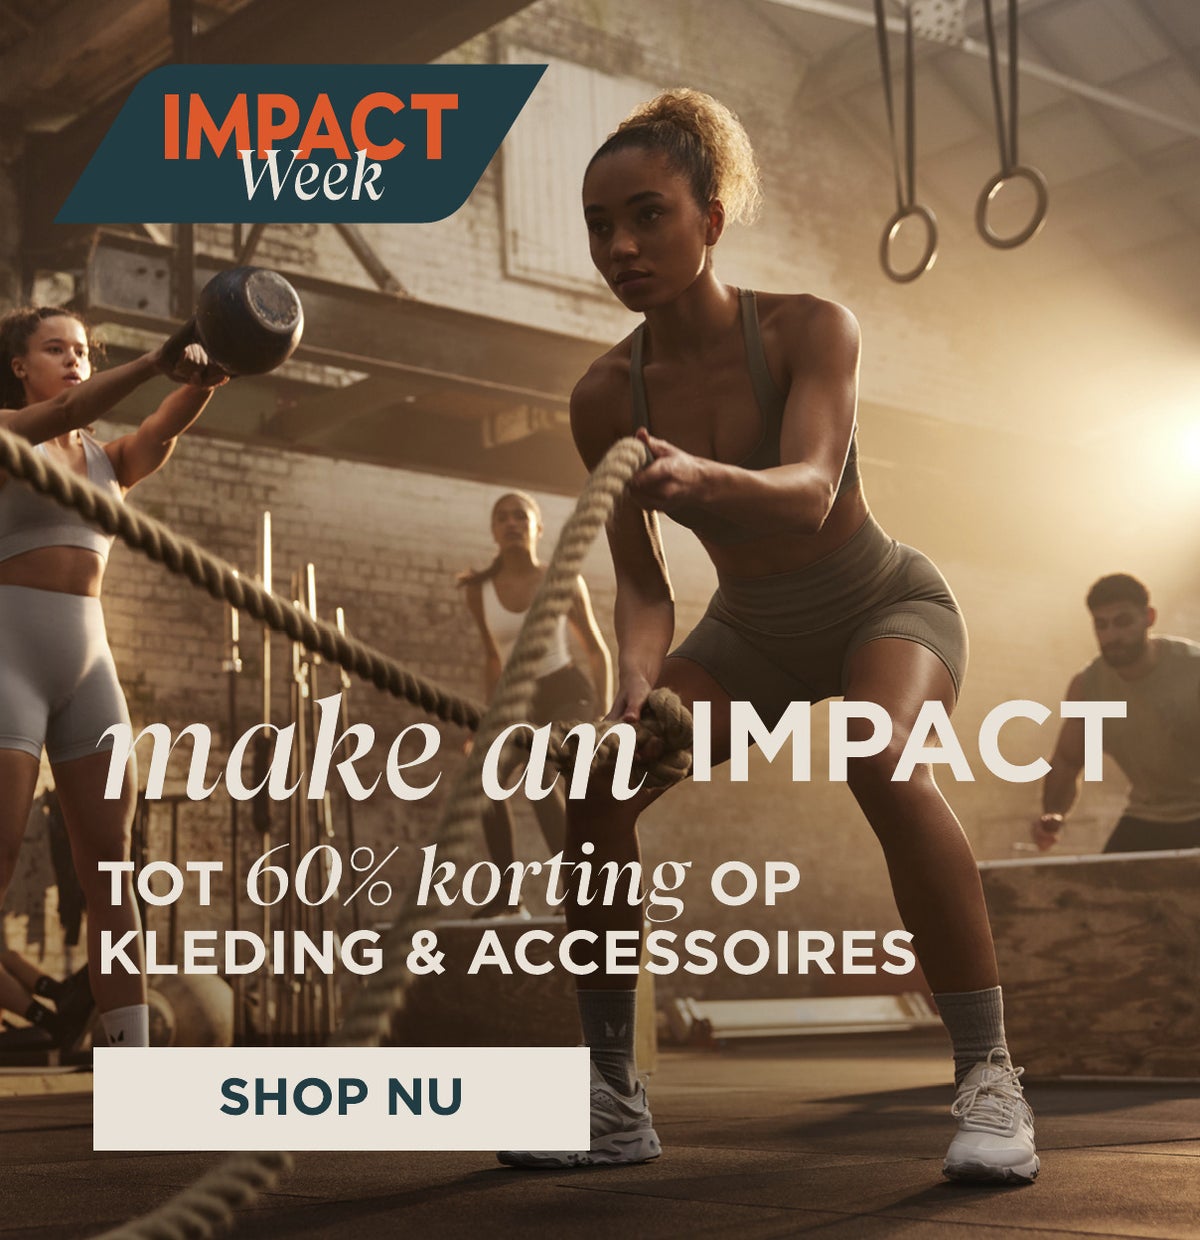 Impact Week - Kleding & accessoires tot 60% korting